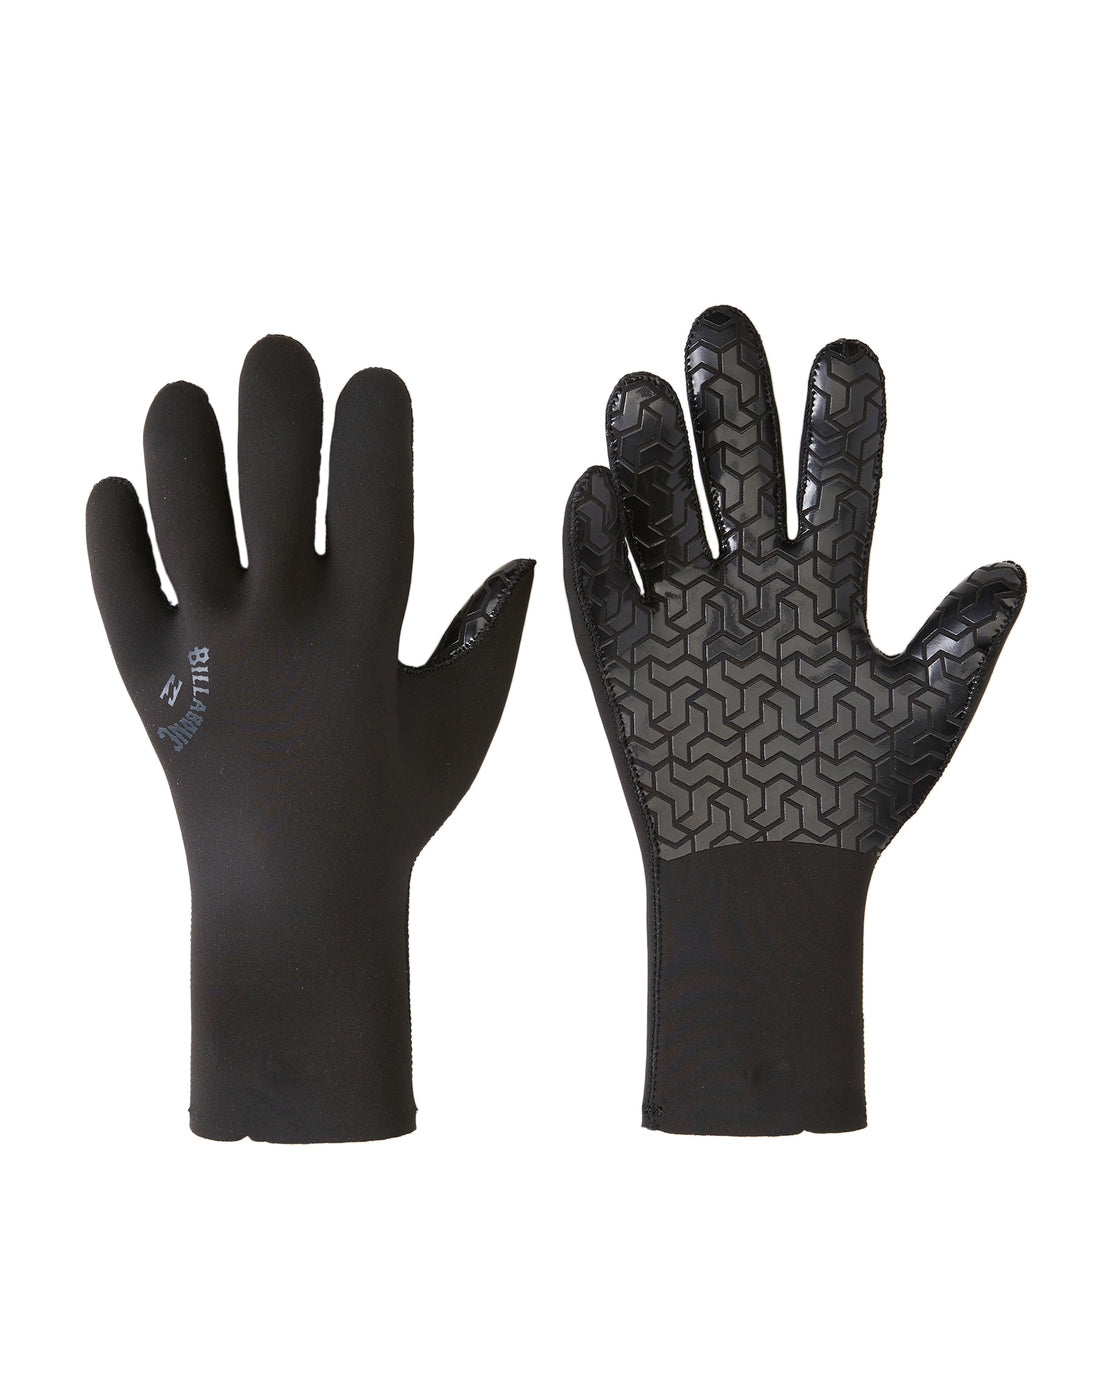 Billabong Absolute 5mm Gloves, XS / Black